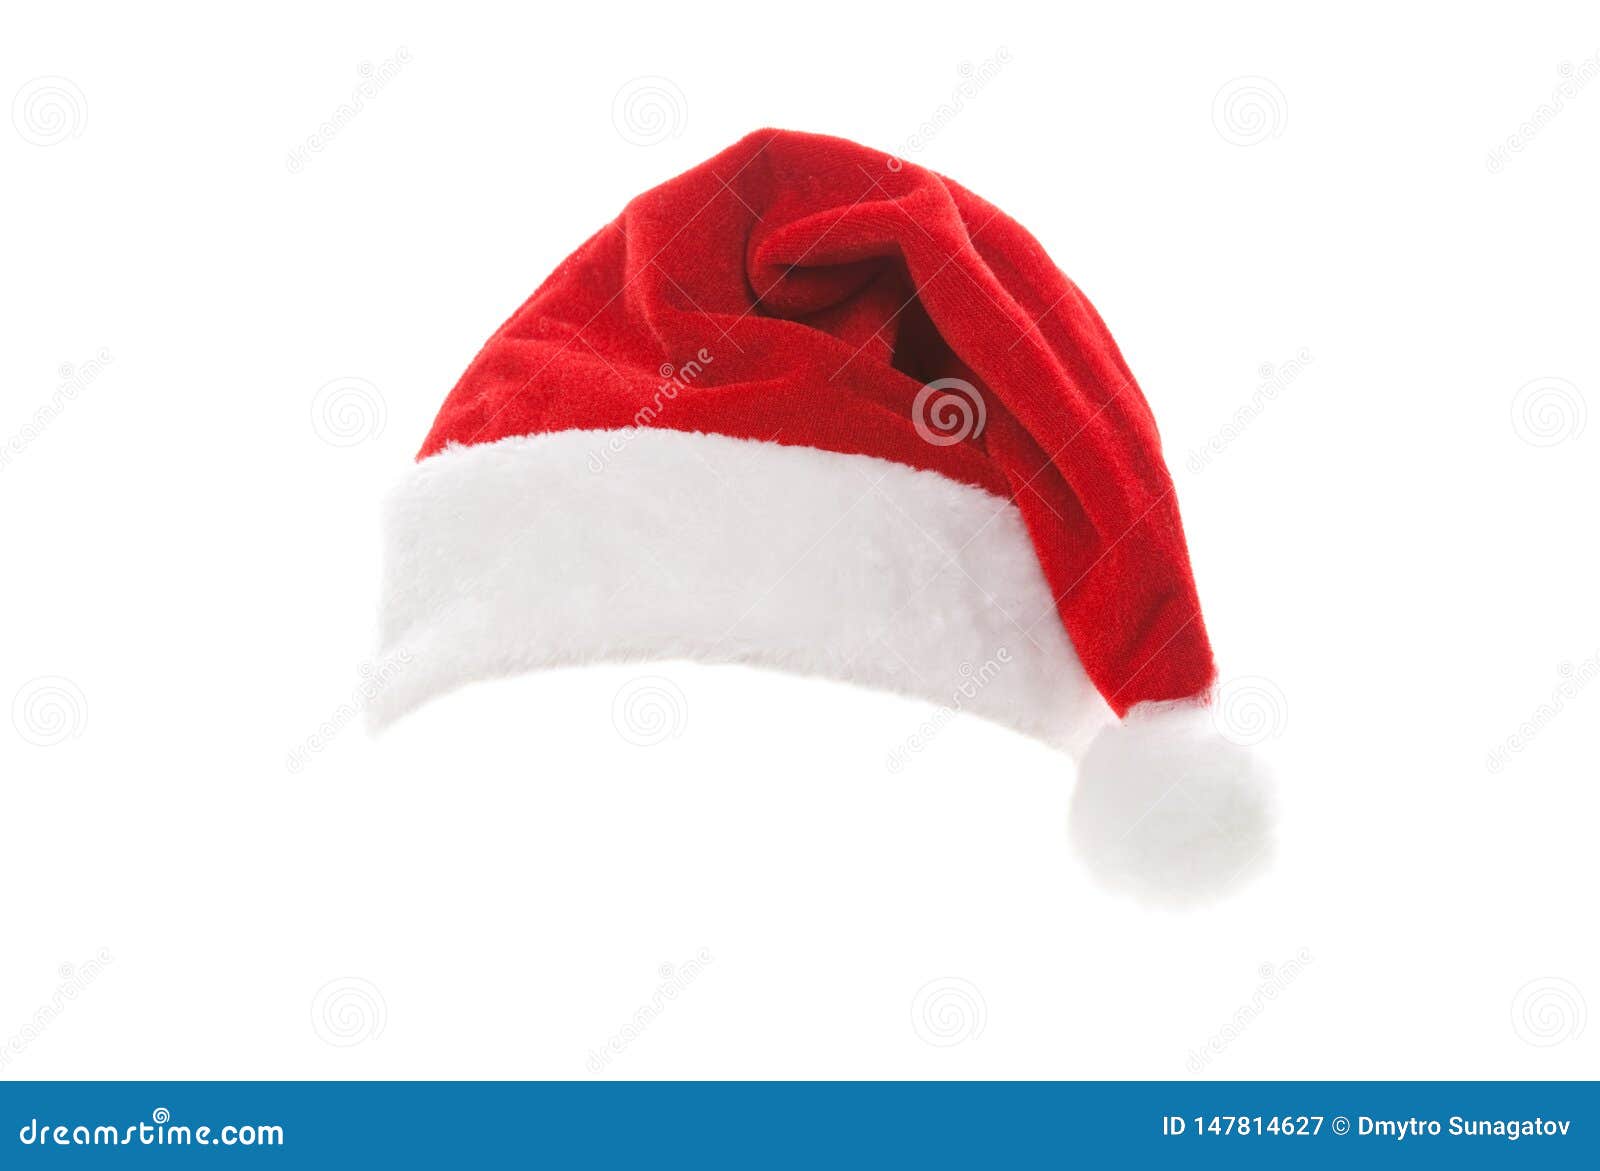 Chiếc nón ông già Noel luôn là biểu tượng vô cùng quen thuộc và đặc trưng của mùa Giáng Sinh. Với những hình ảnh được cắt tách sẵn này, bạn có thể dễ dàng sử dụng trên các thiết kế của mình, tạo nên sự đặc sắc và tăng thêm khí thế cho bất kỳ dự án nào. Hãy khám phá ngay nhé!